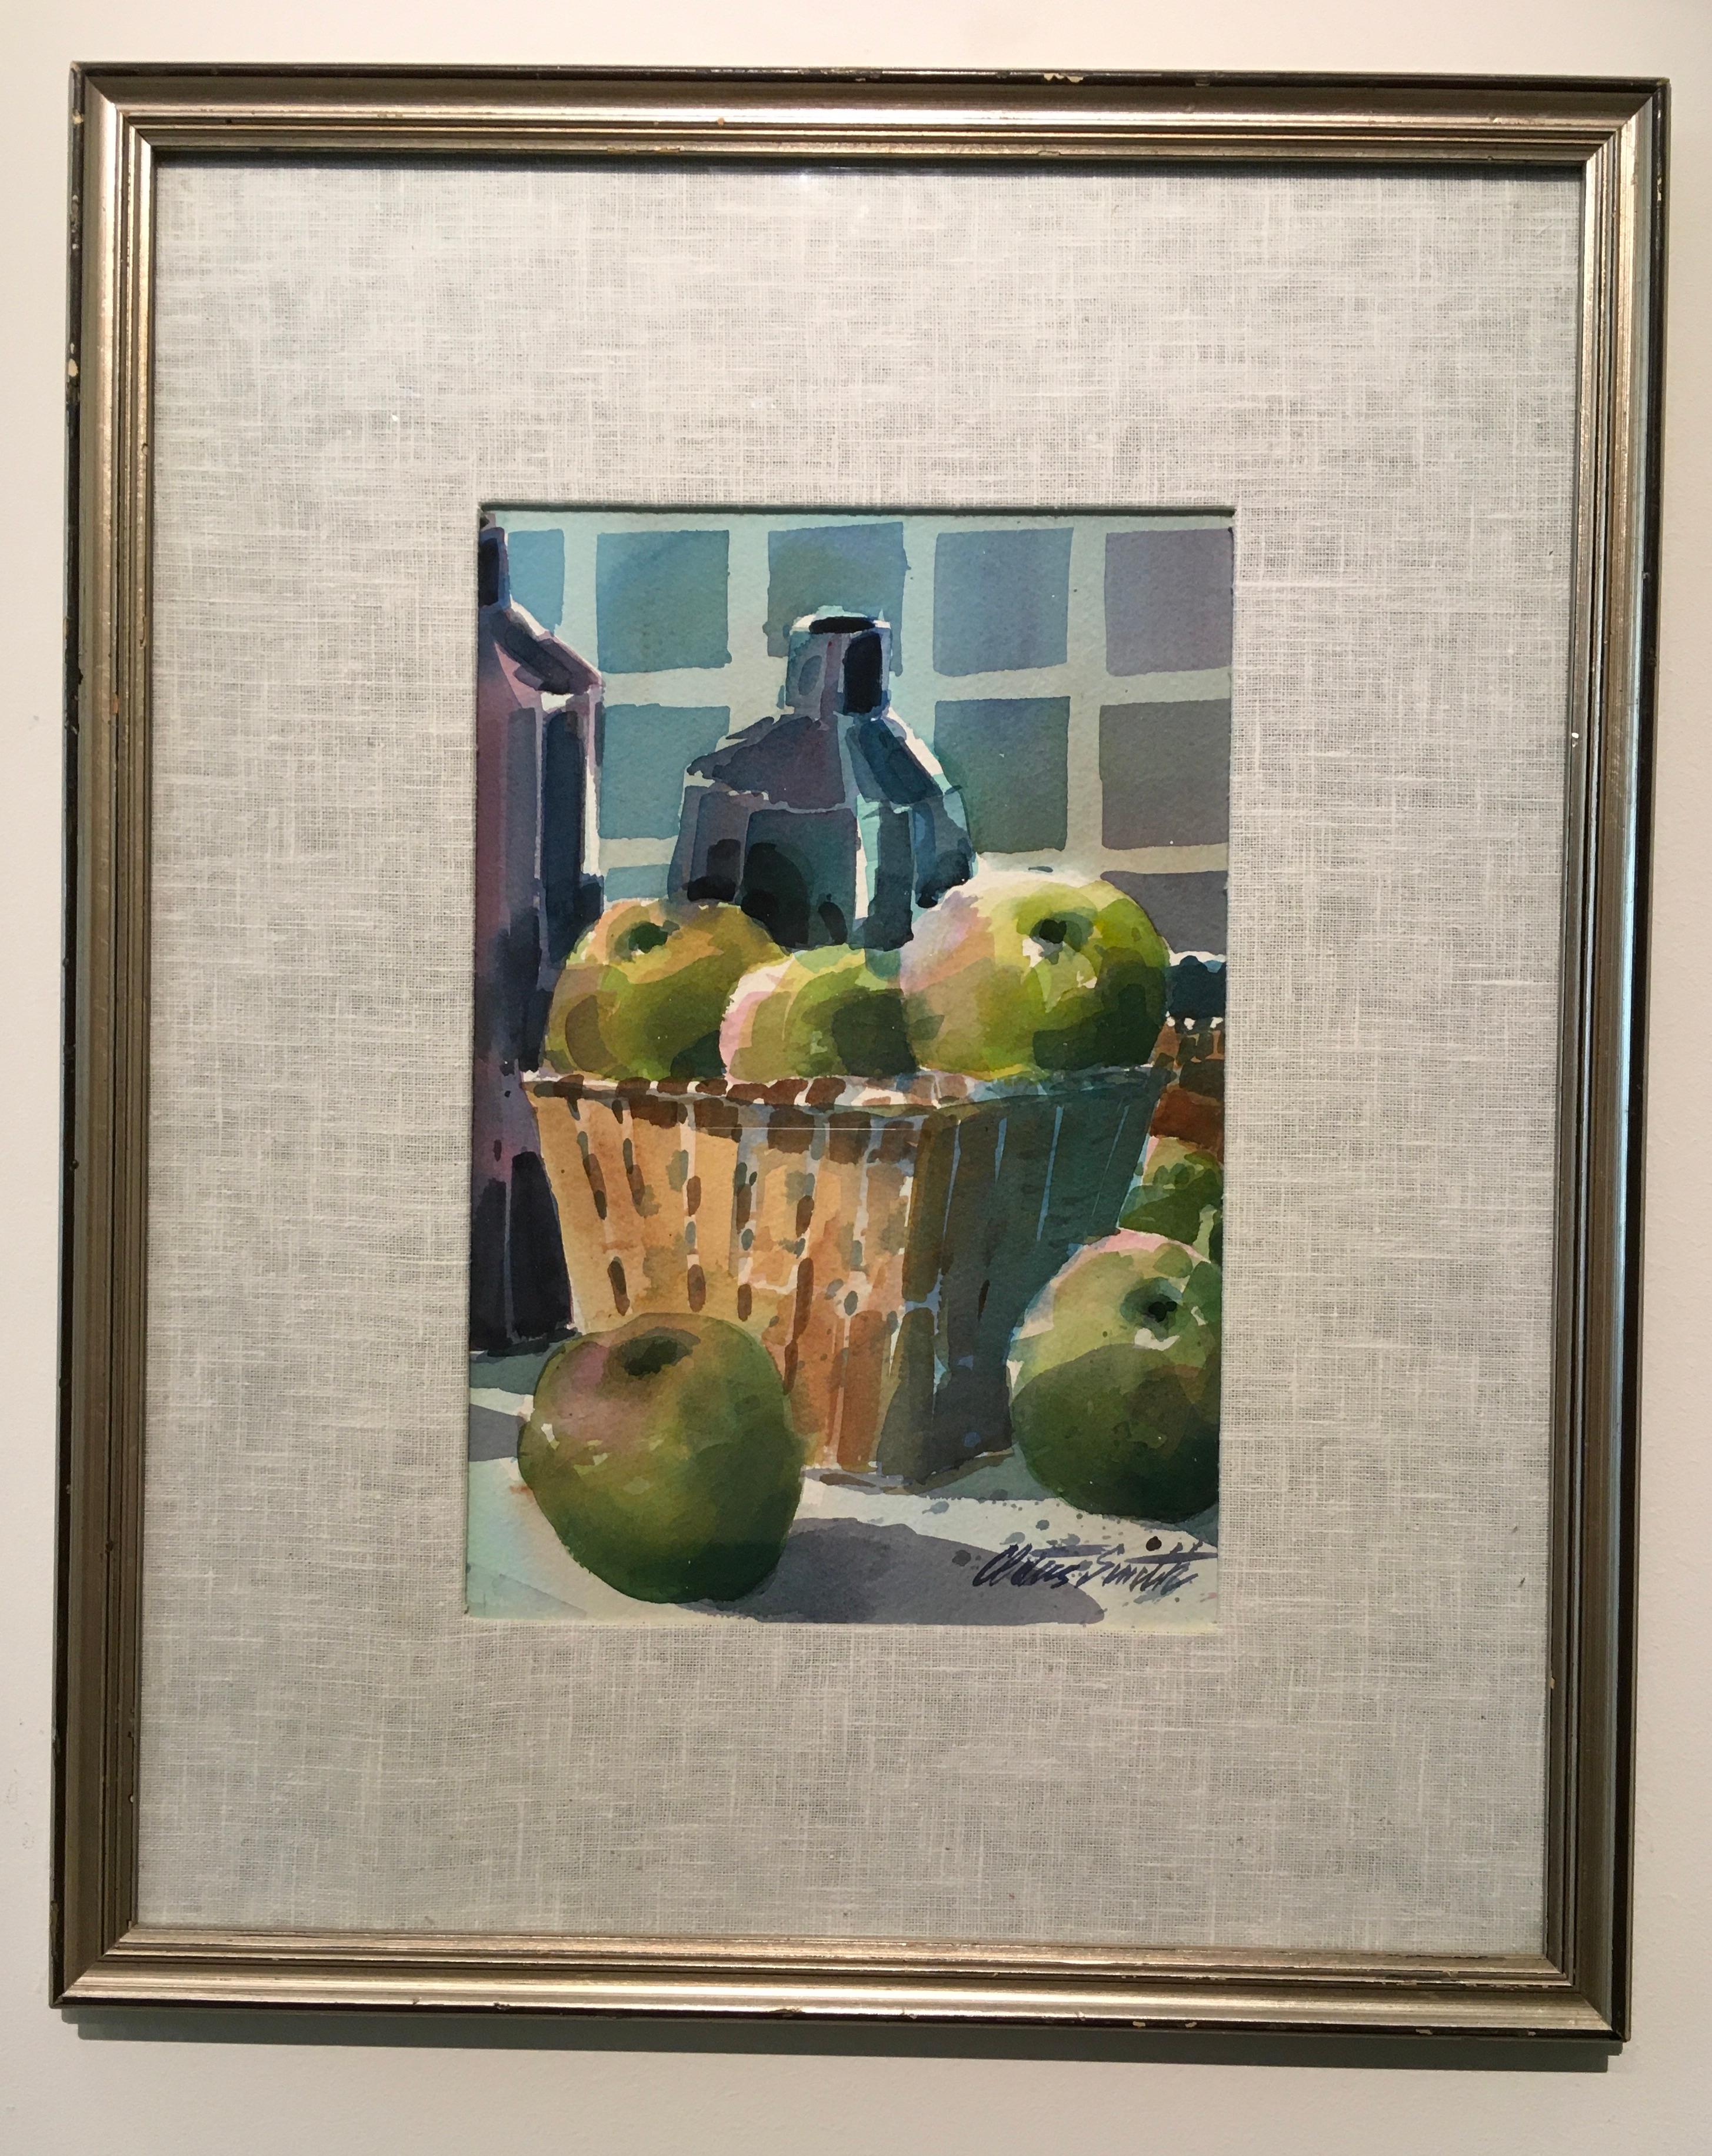 Cette aquarelle sur papier encadrée de 21,5 x 17,25 pouces, intitulée "Nature morte avec fruits", est l'œuvre de l'artiste de l'Oklahoma Cletus Smith. Le sujet comprend un panier brun sur une table avec une grappe de pommes vertes et deux verres